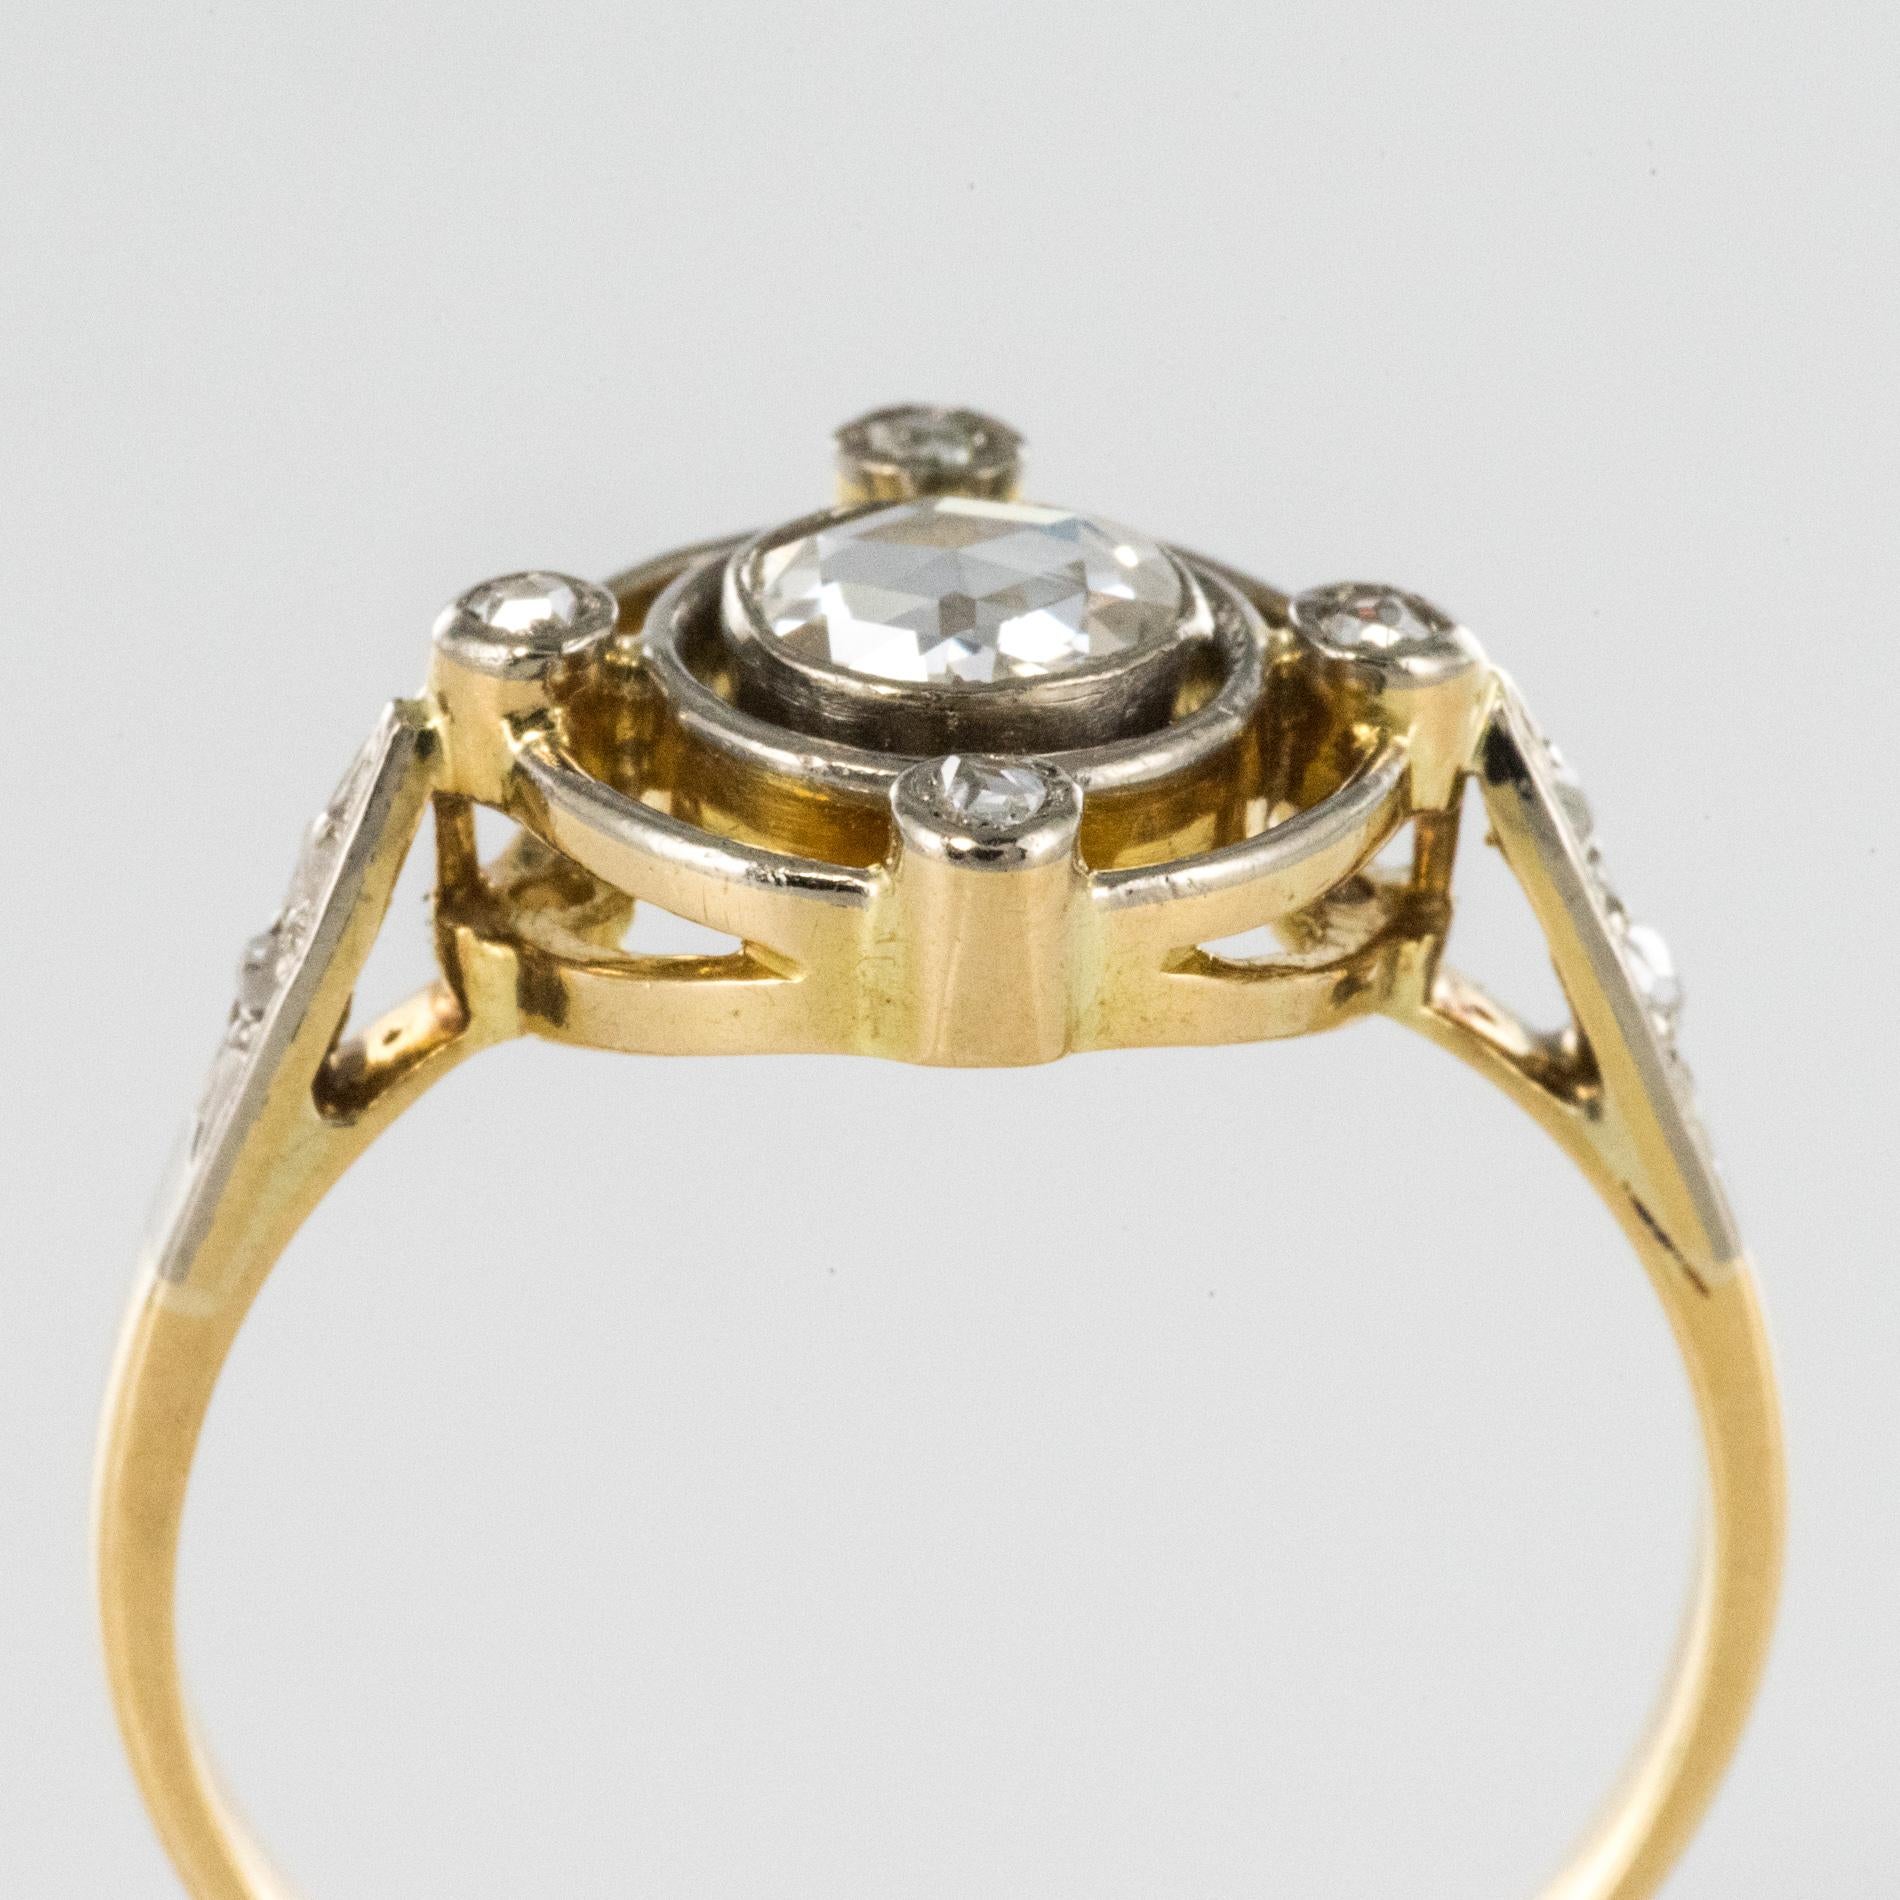 French 1890s 18 Karat Yellow Gold Rose-Cut Diamonds Ring 1